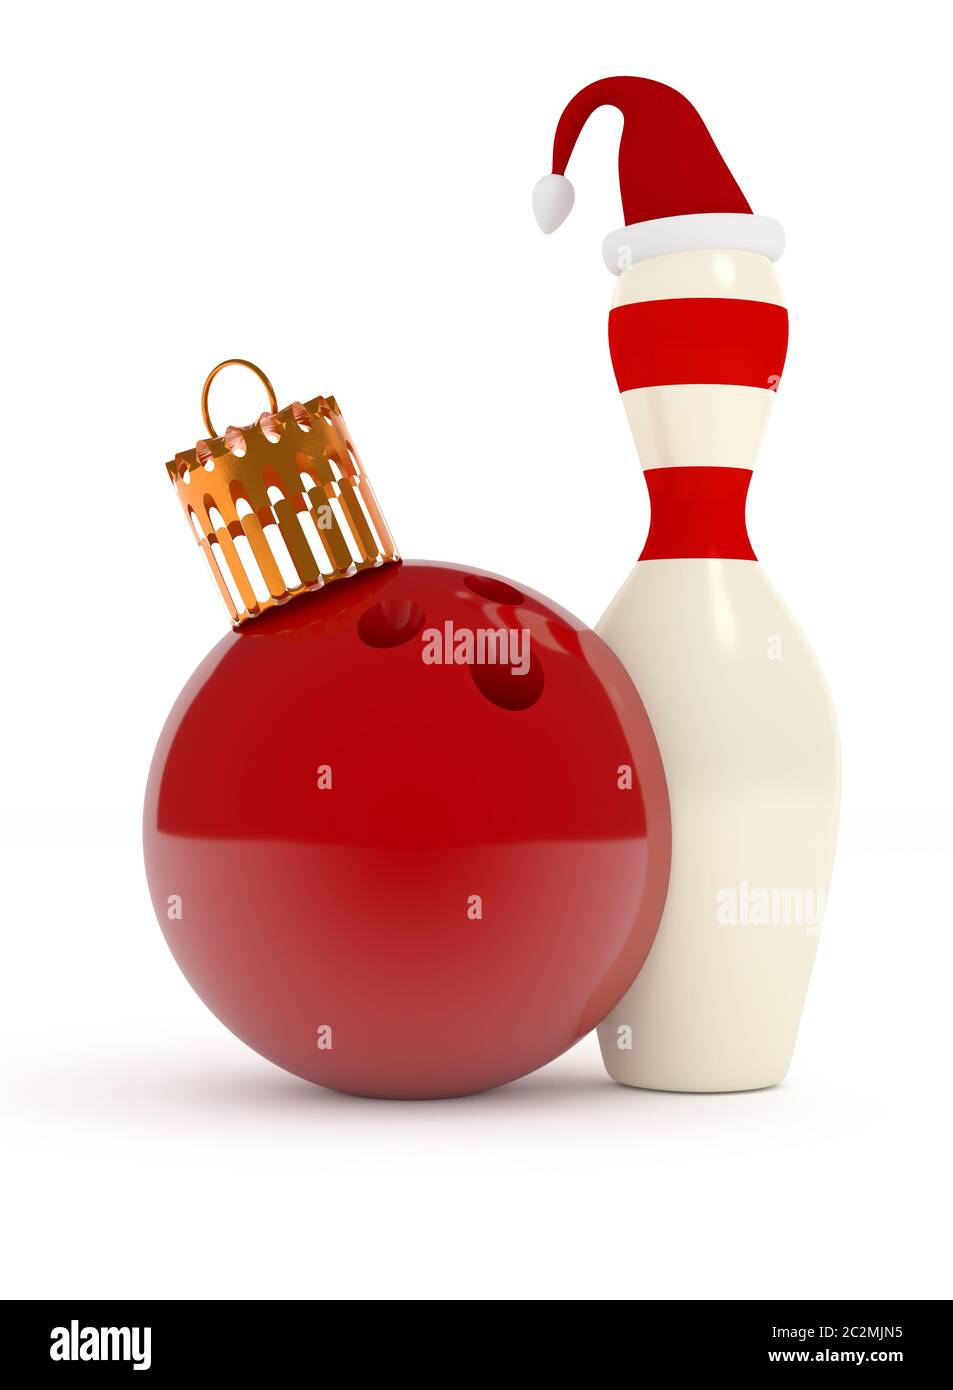 Bowling Kugel als Weihnachtskugel und Pin mit Hut von Santa, Weihnachten  bowling Konzept, 3D-Rendering Stockfotografie - Alamy